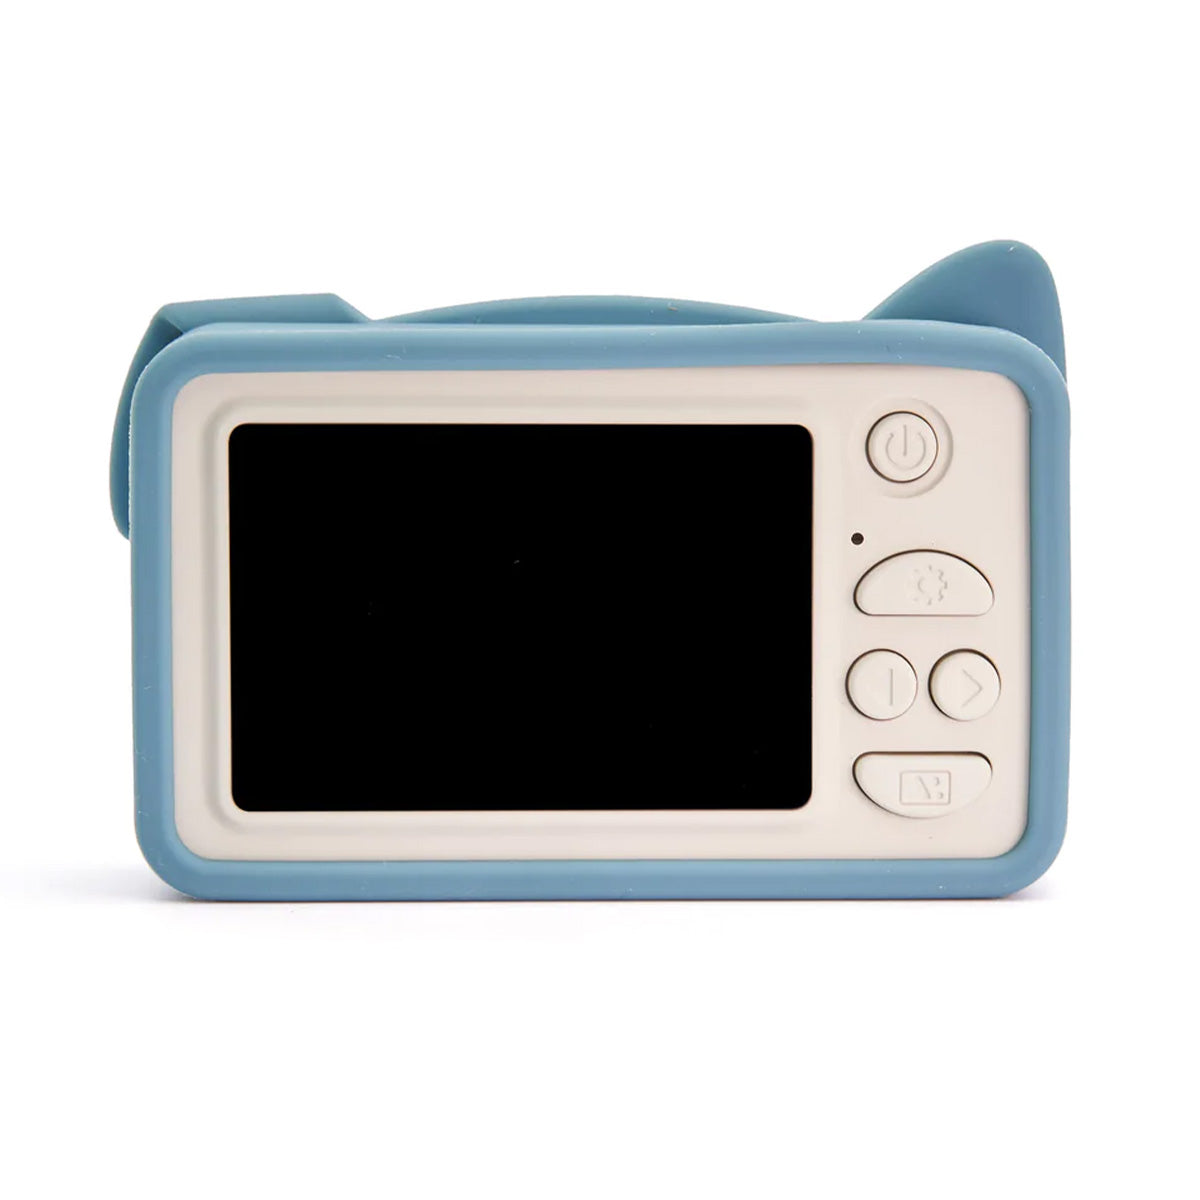 De Hoppstar Rookie yale is de perfecte eerste digitale camera voor jouw kindje. Deze kindercamera is perfect voor kleine handjes. De camera wordt beschermd door een vrolijke en zachte siliconen hoes. VanZus.